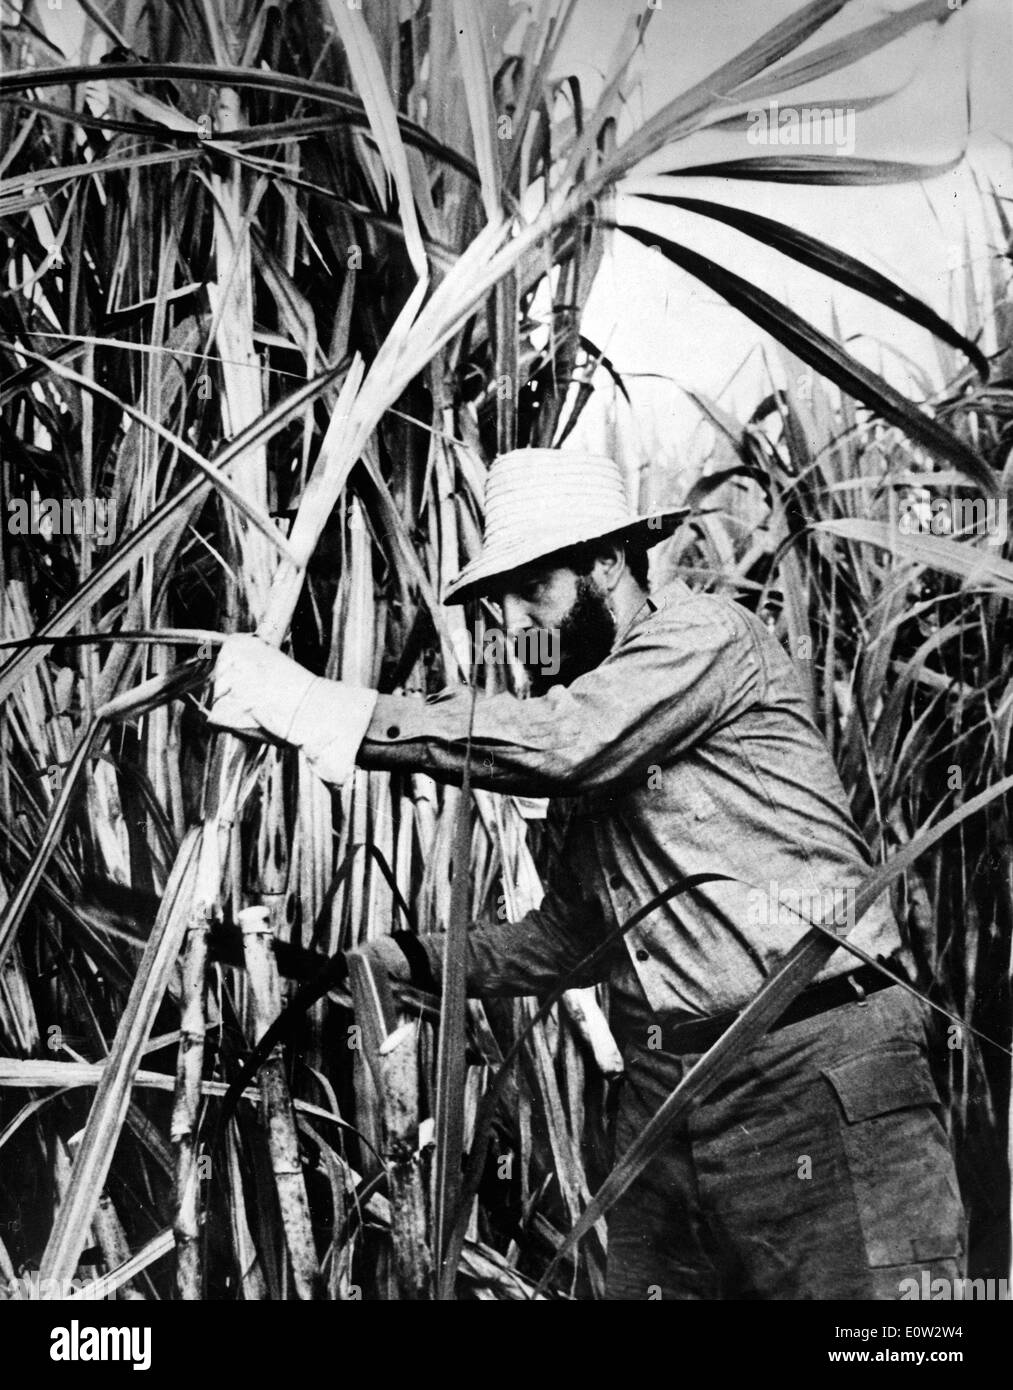 Feb 13, 1961 - Havana, Cuba - FIDEL ALEJANDRO CASTRO RUIZ (nato il 13 agosto 1926) è stato il dominatore di Cuba a partire dal 1959, quando, portando il 26 luglio del movimento, egli distrusse il regime di Fulgencio Batista. Negli anni che seguirono ha sovrinteso alla trasformazione di Cuba nel primo stato comunista nell'emisfero occidentale. Foto Stock